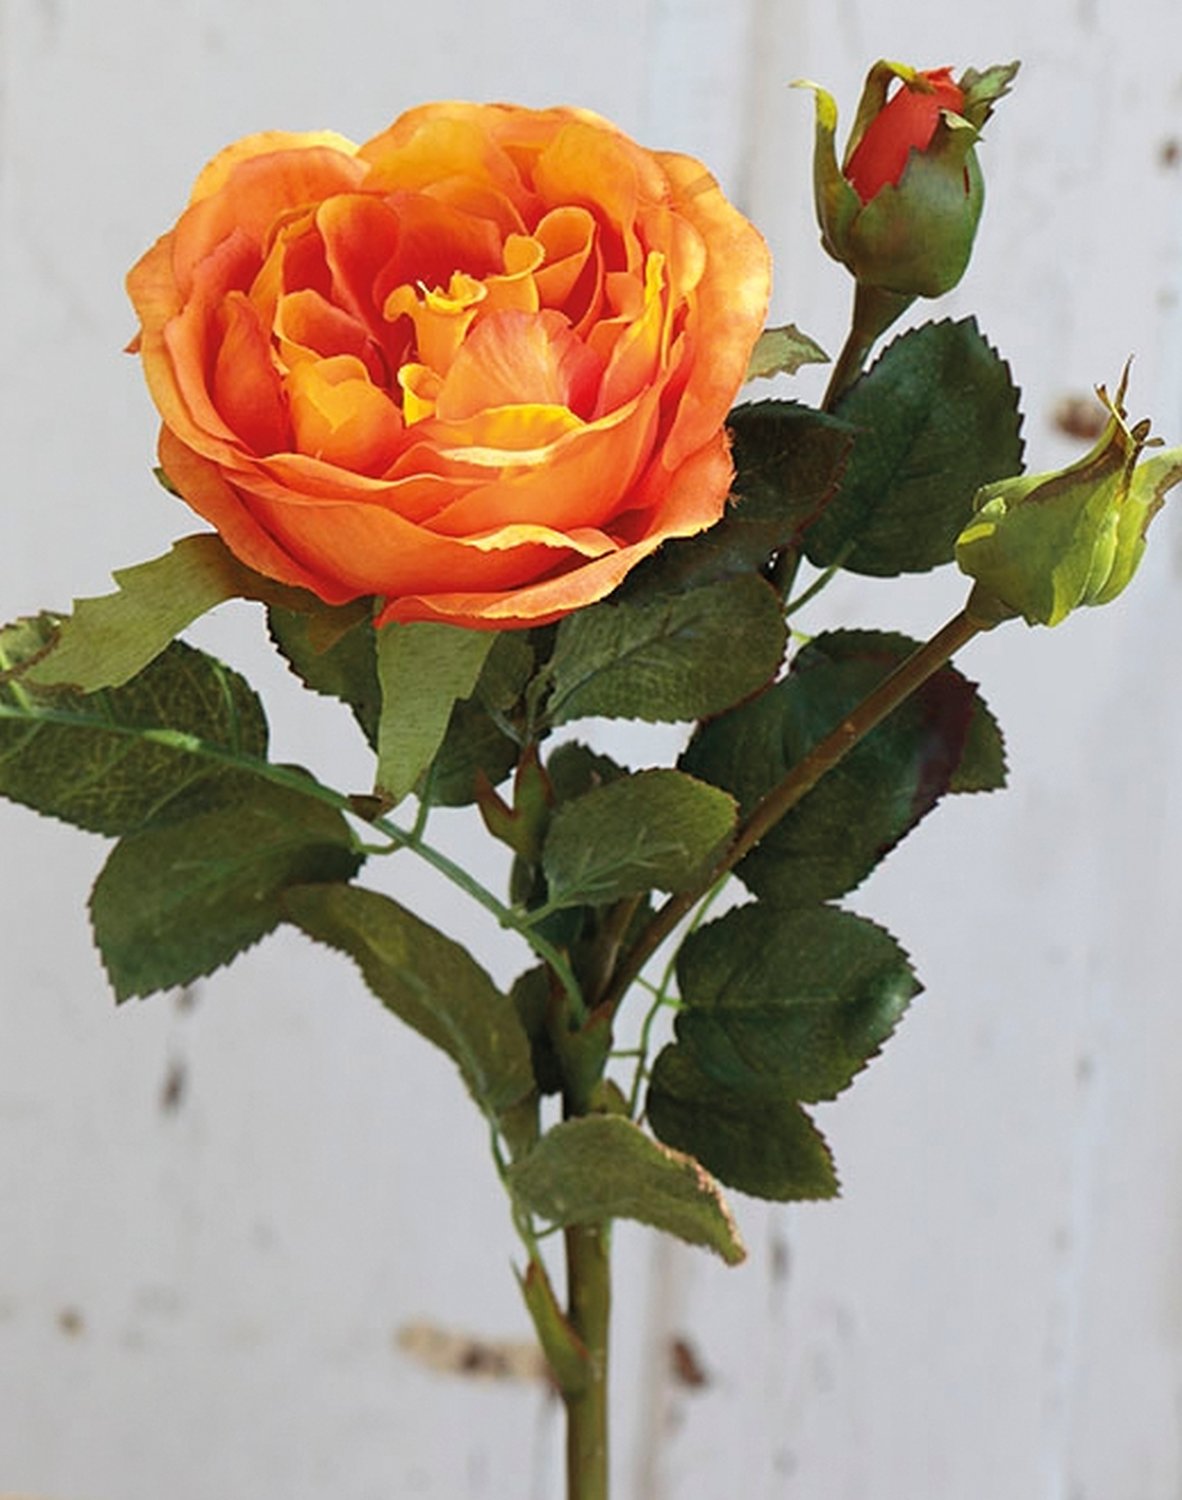 False rose, 1 flower, 2 buds, 30 cm, orange